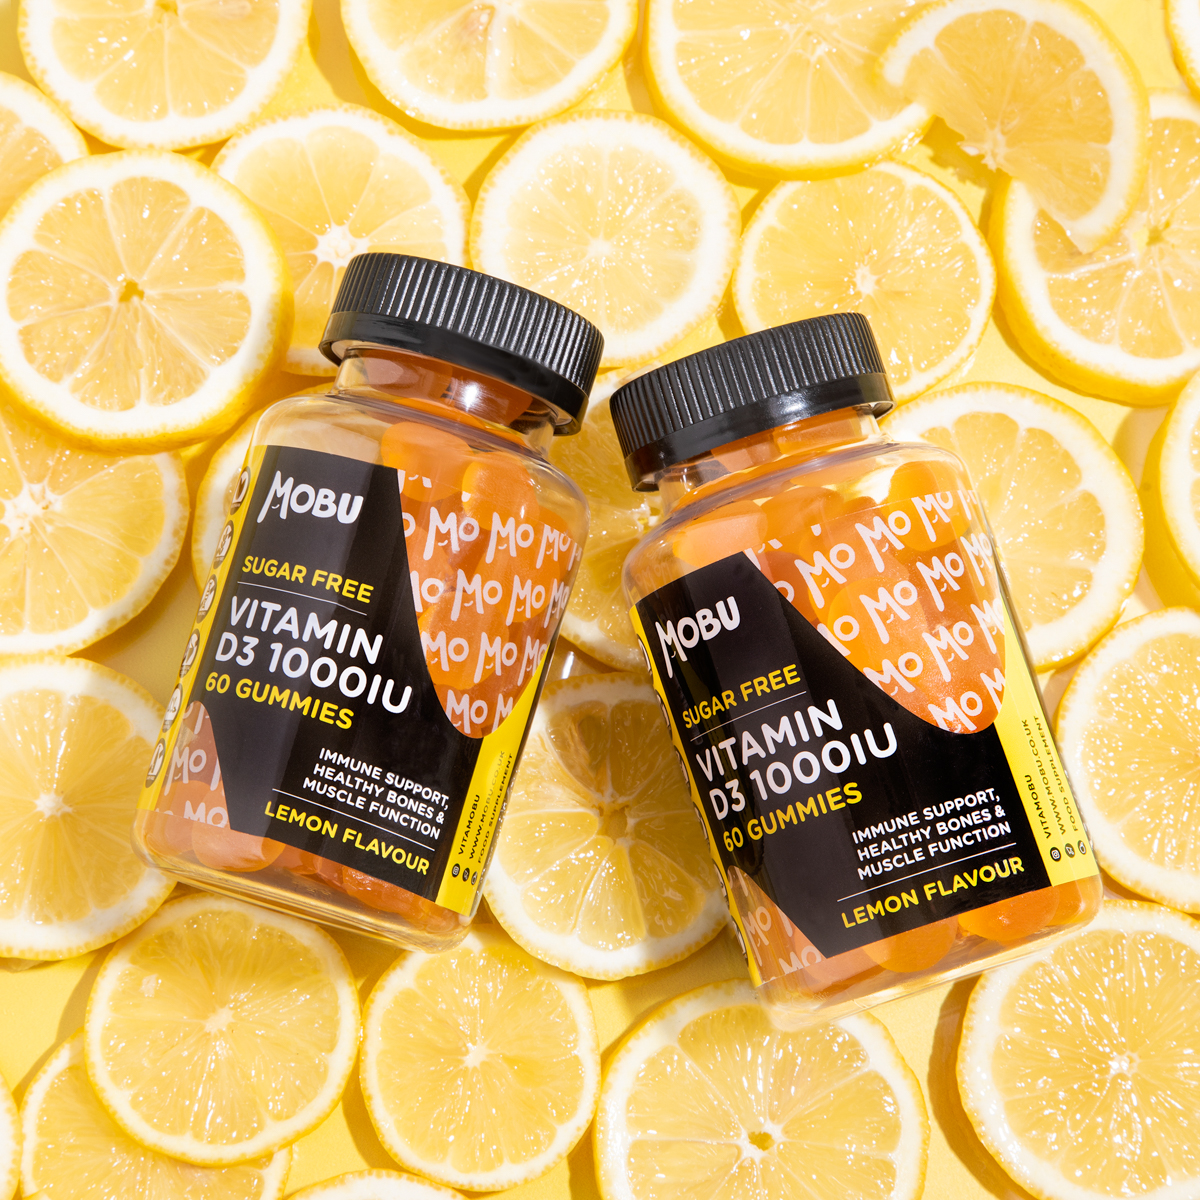 MOBU Vitamin Gummies displayed on background of oranges